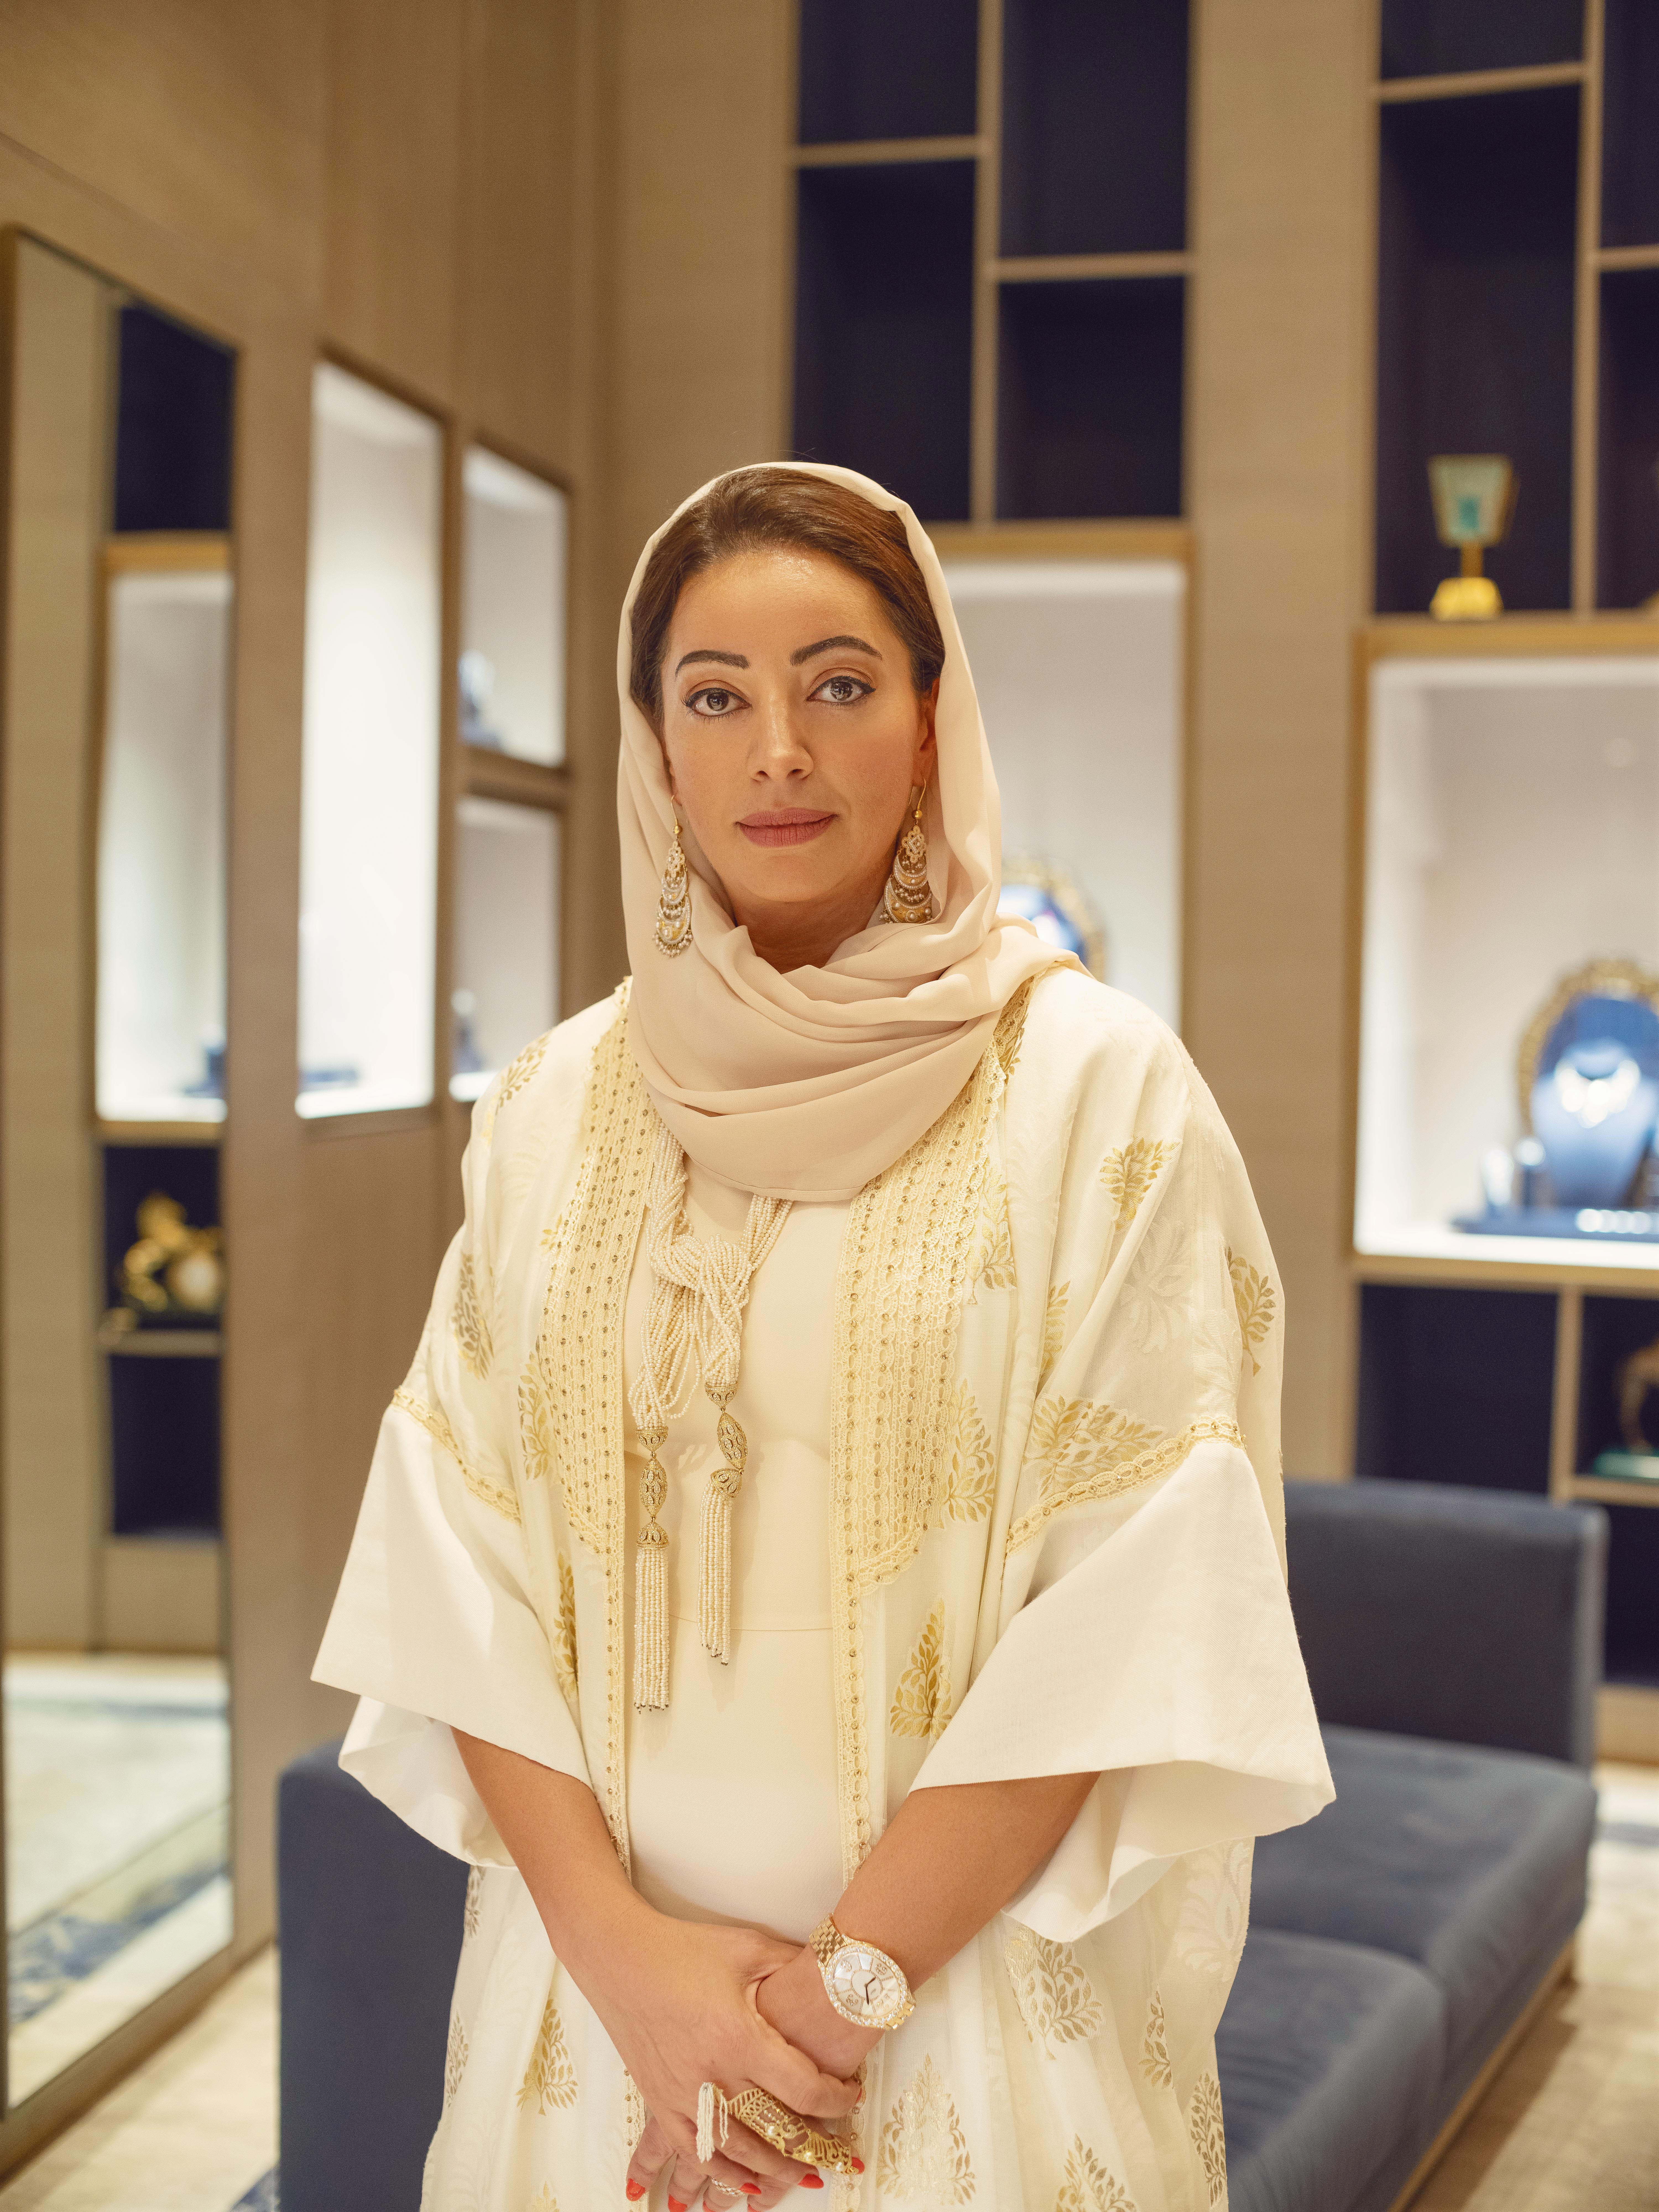 غادة الفردان، الرئيس التنفيذي لمجوهرات الفردان دبي: